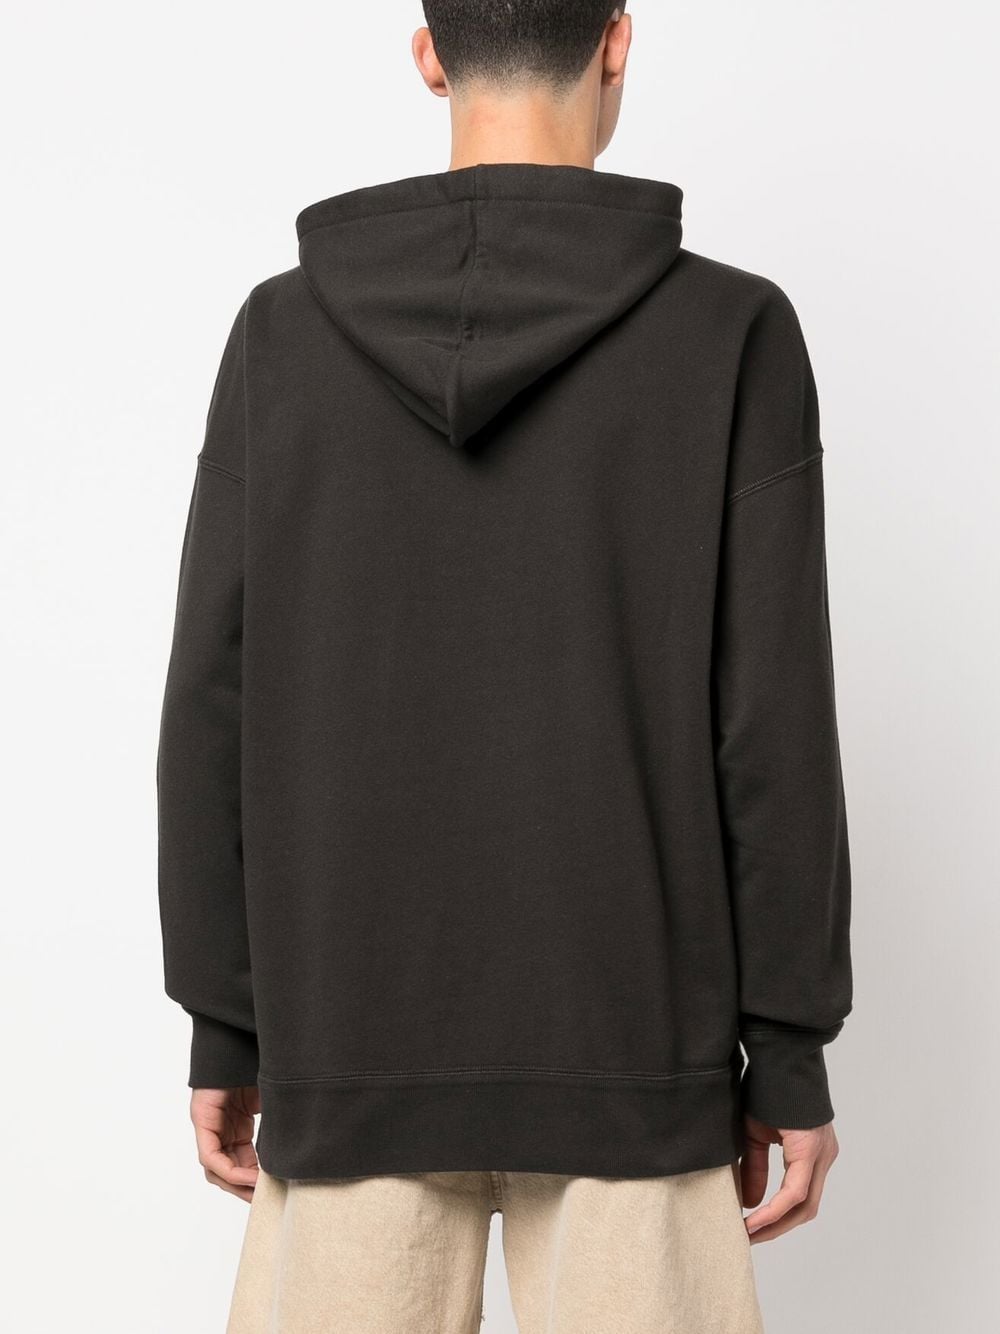 Black flocked-logo drawstring hoodie